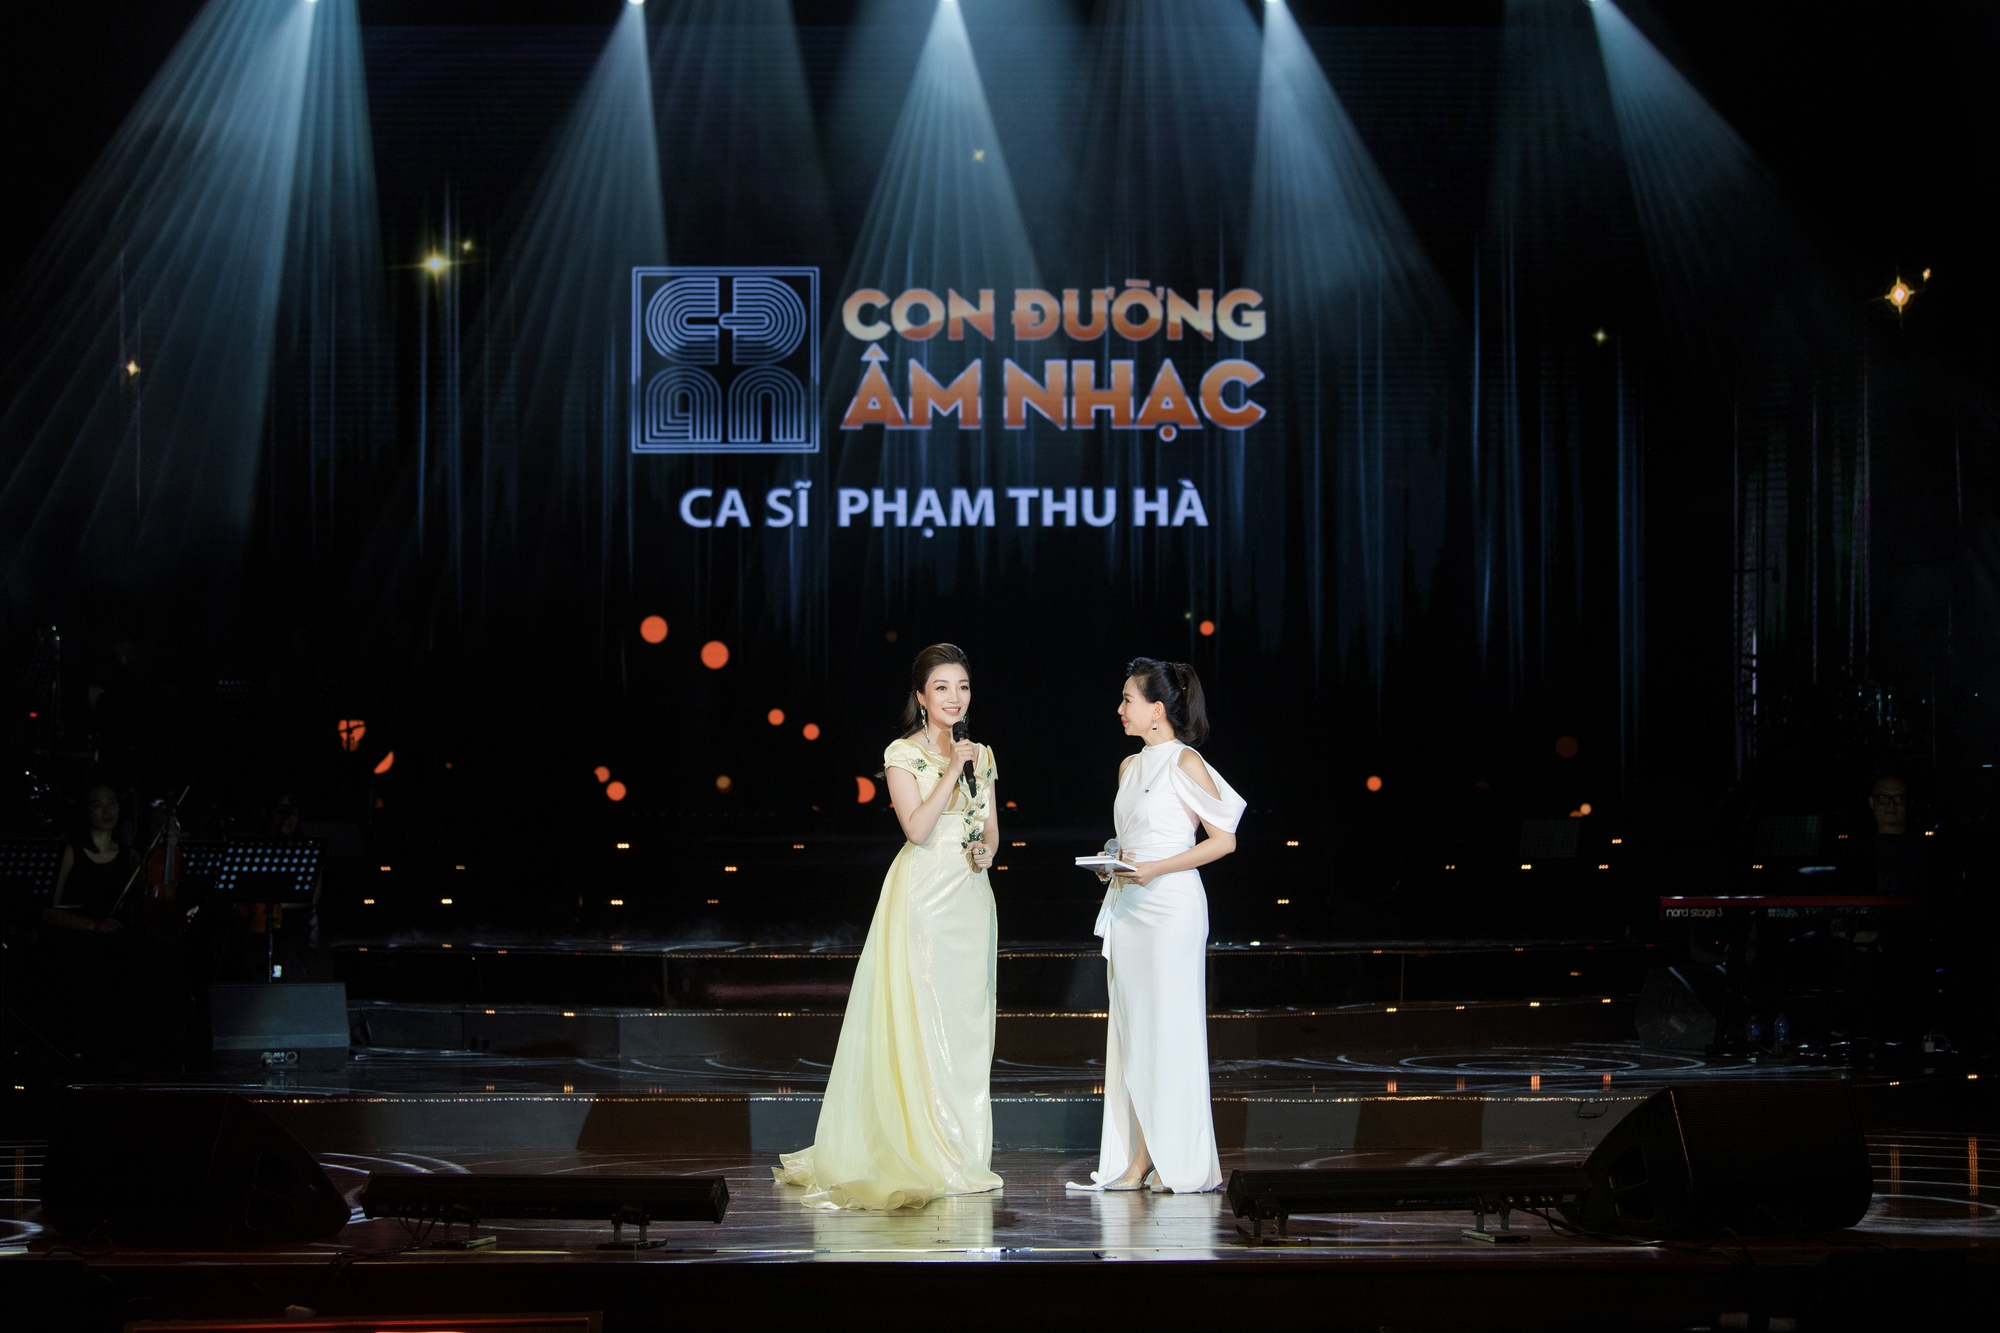 Nhạc sỹ Trần Mạnh Hùng: “Phạm Thu Hà có phẩm cách và tố chất của một ngôi sao lớn” - Ảnh 3.